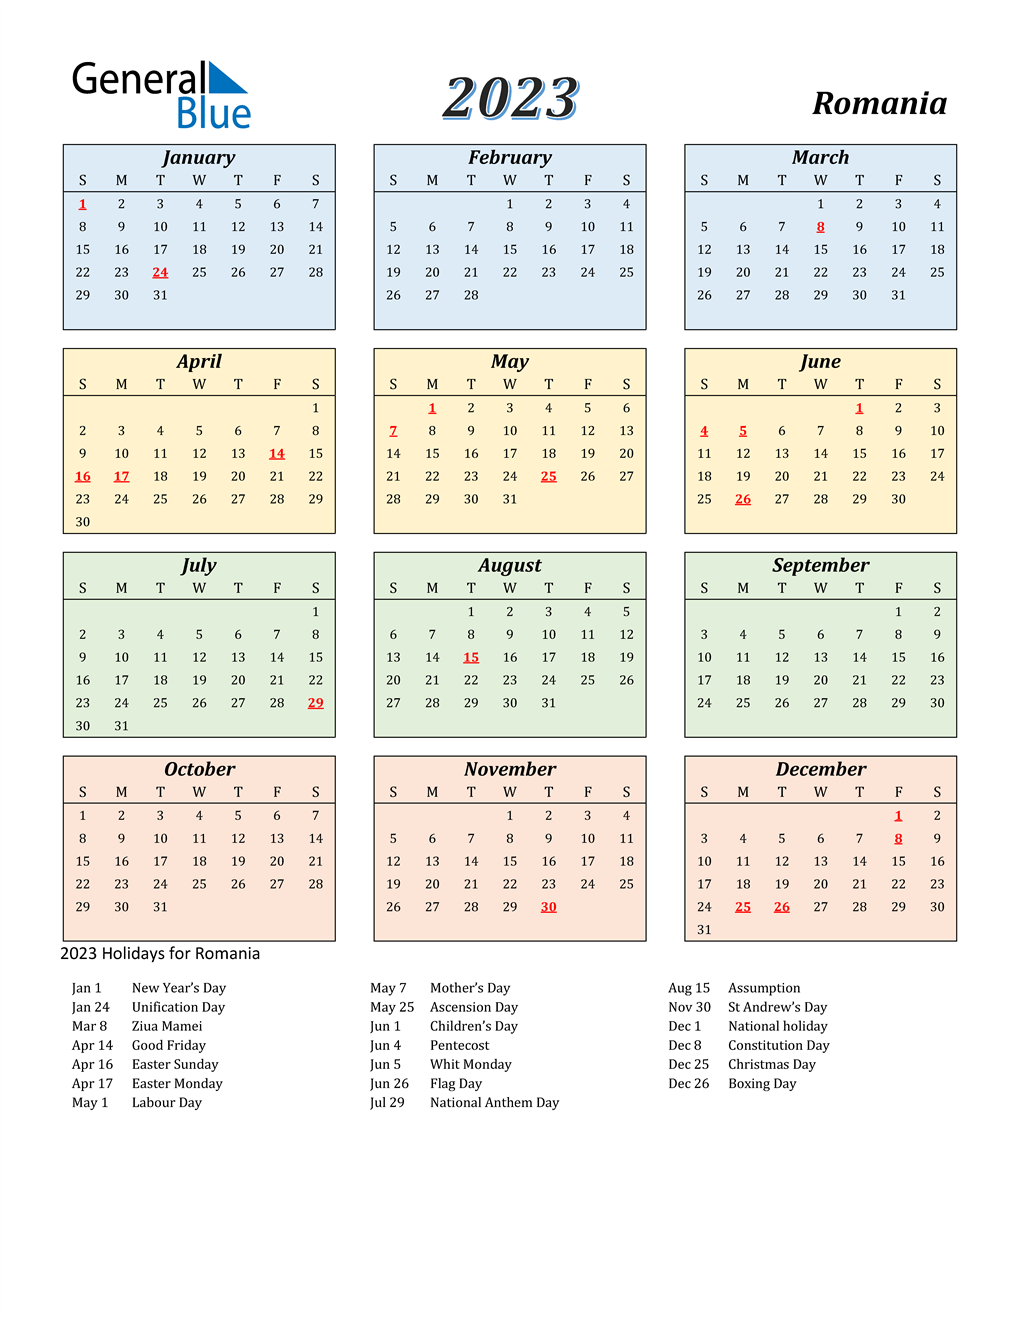 Calendar 2023 Holidays Canada Mobila Bucatarie 2023 Rezfoods Resep